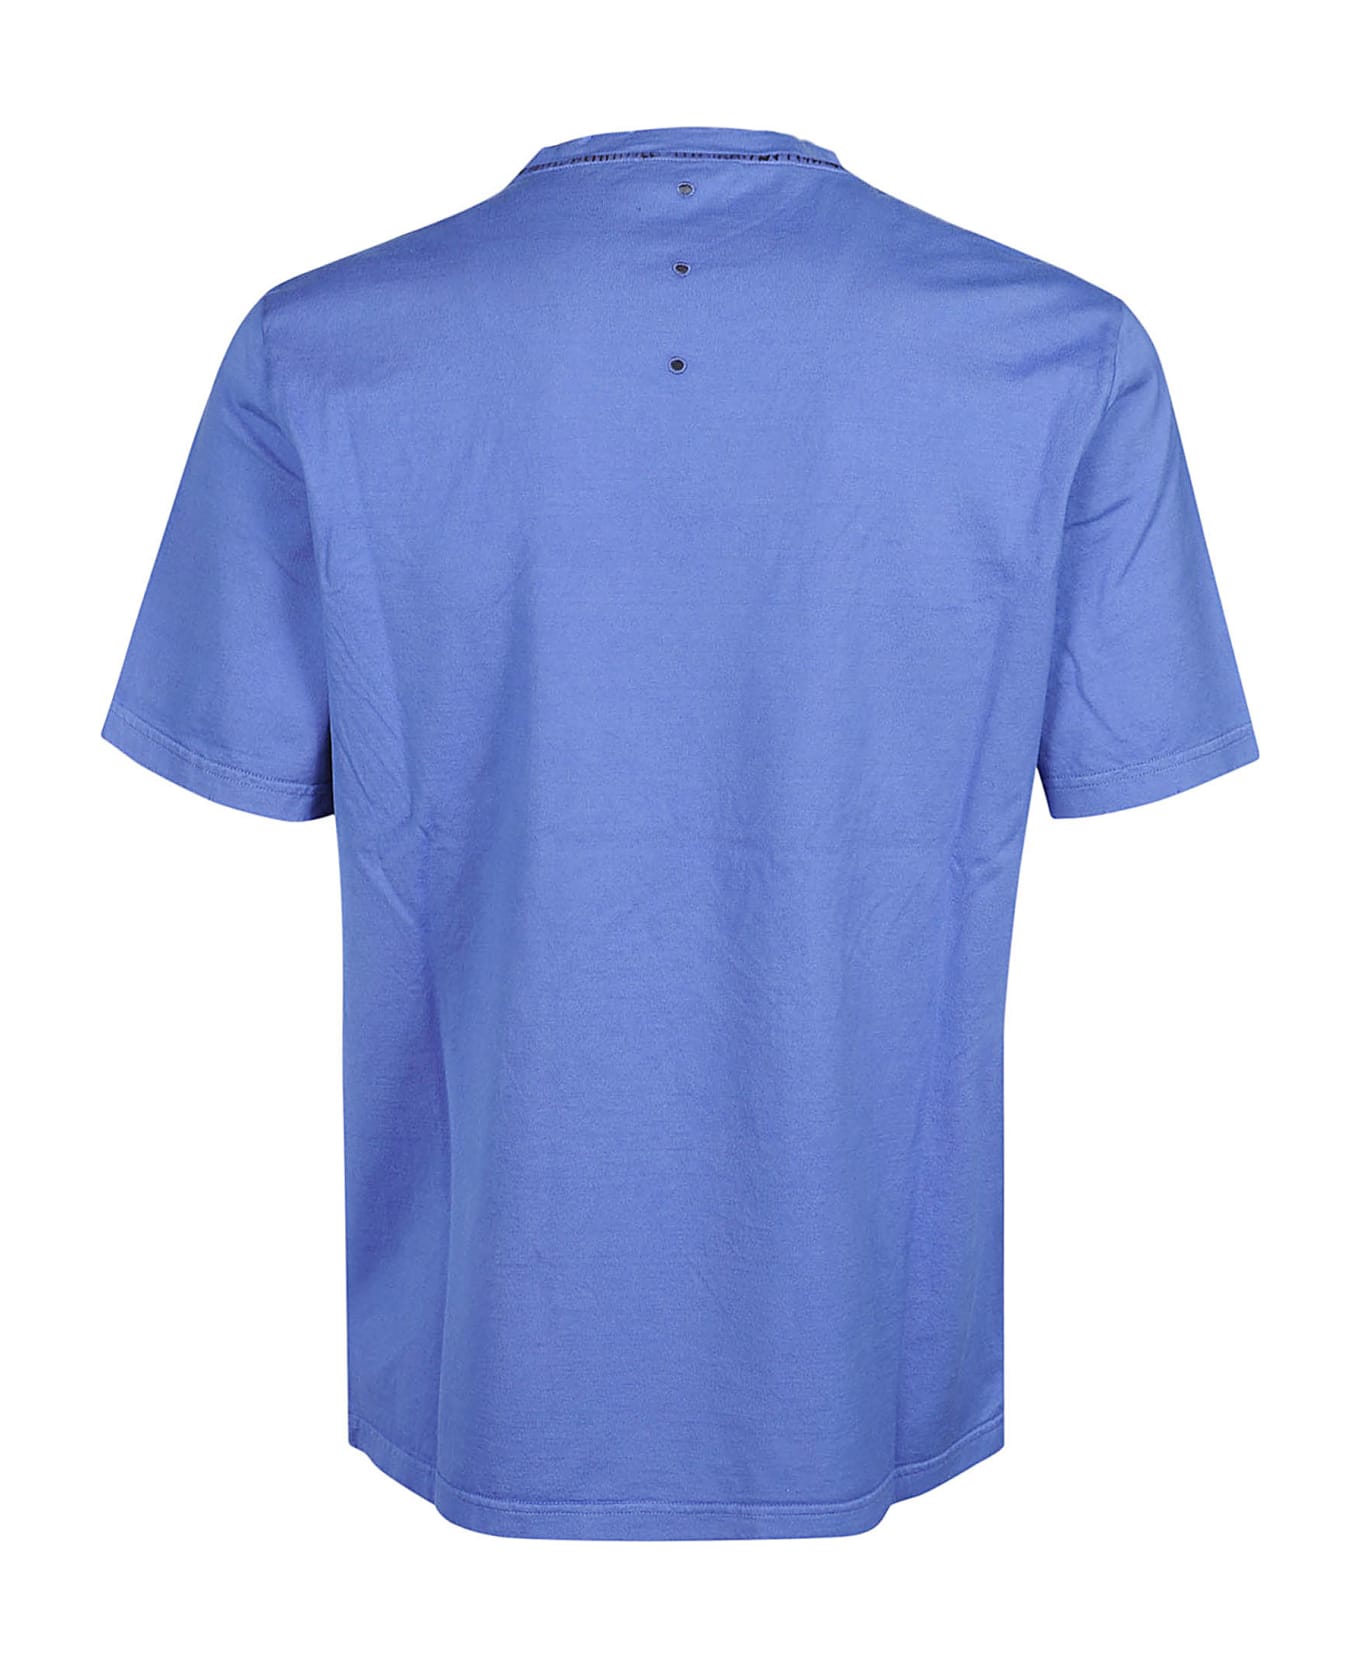 Premiata Neverwhite T-shirt - Blue